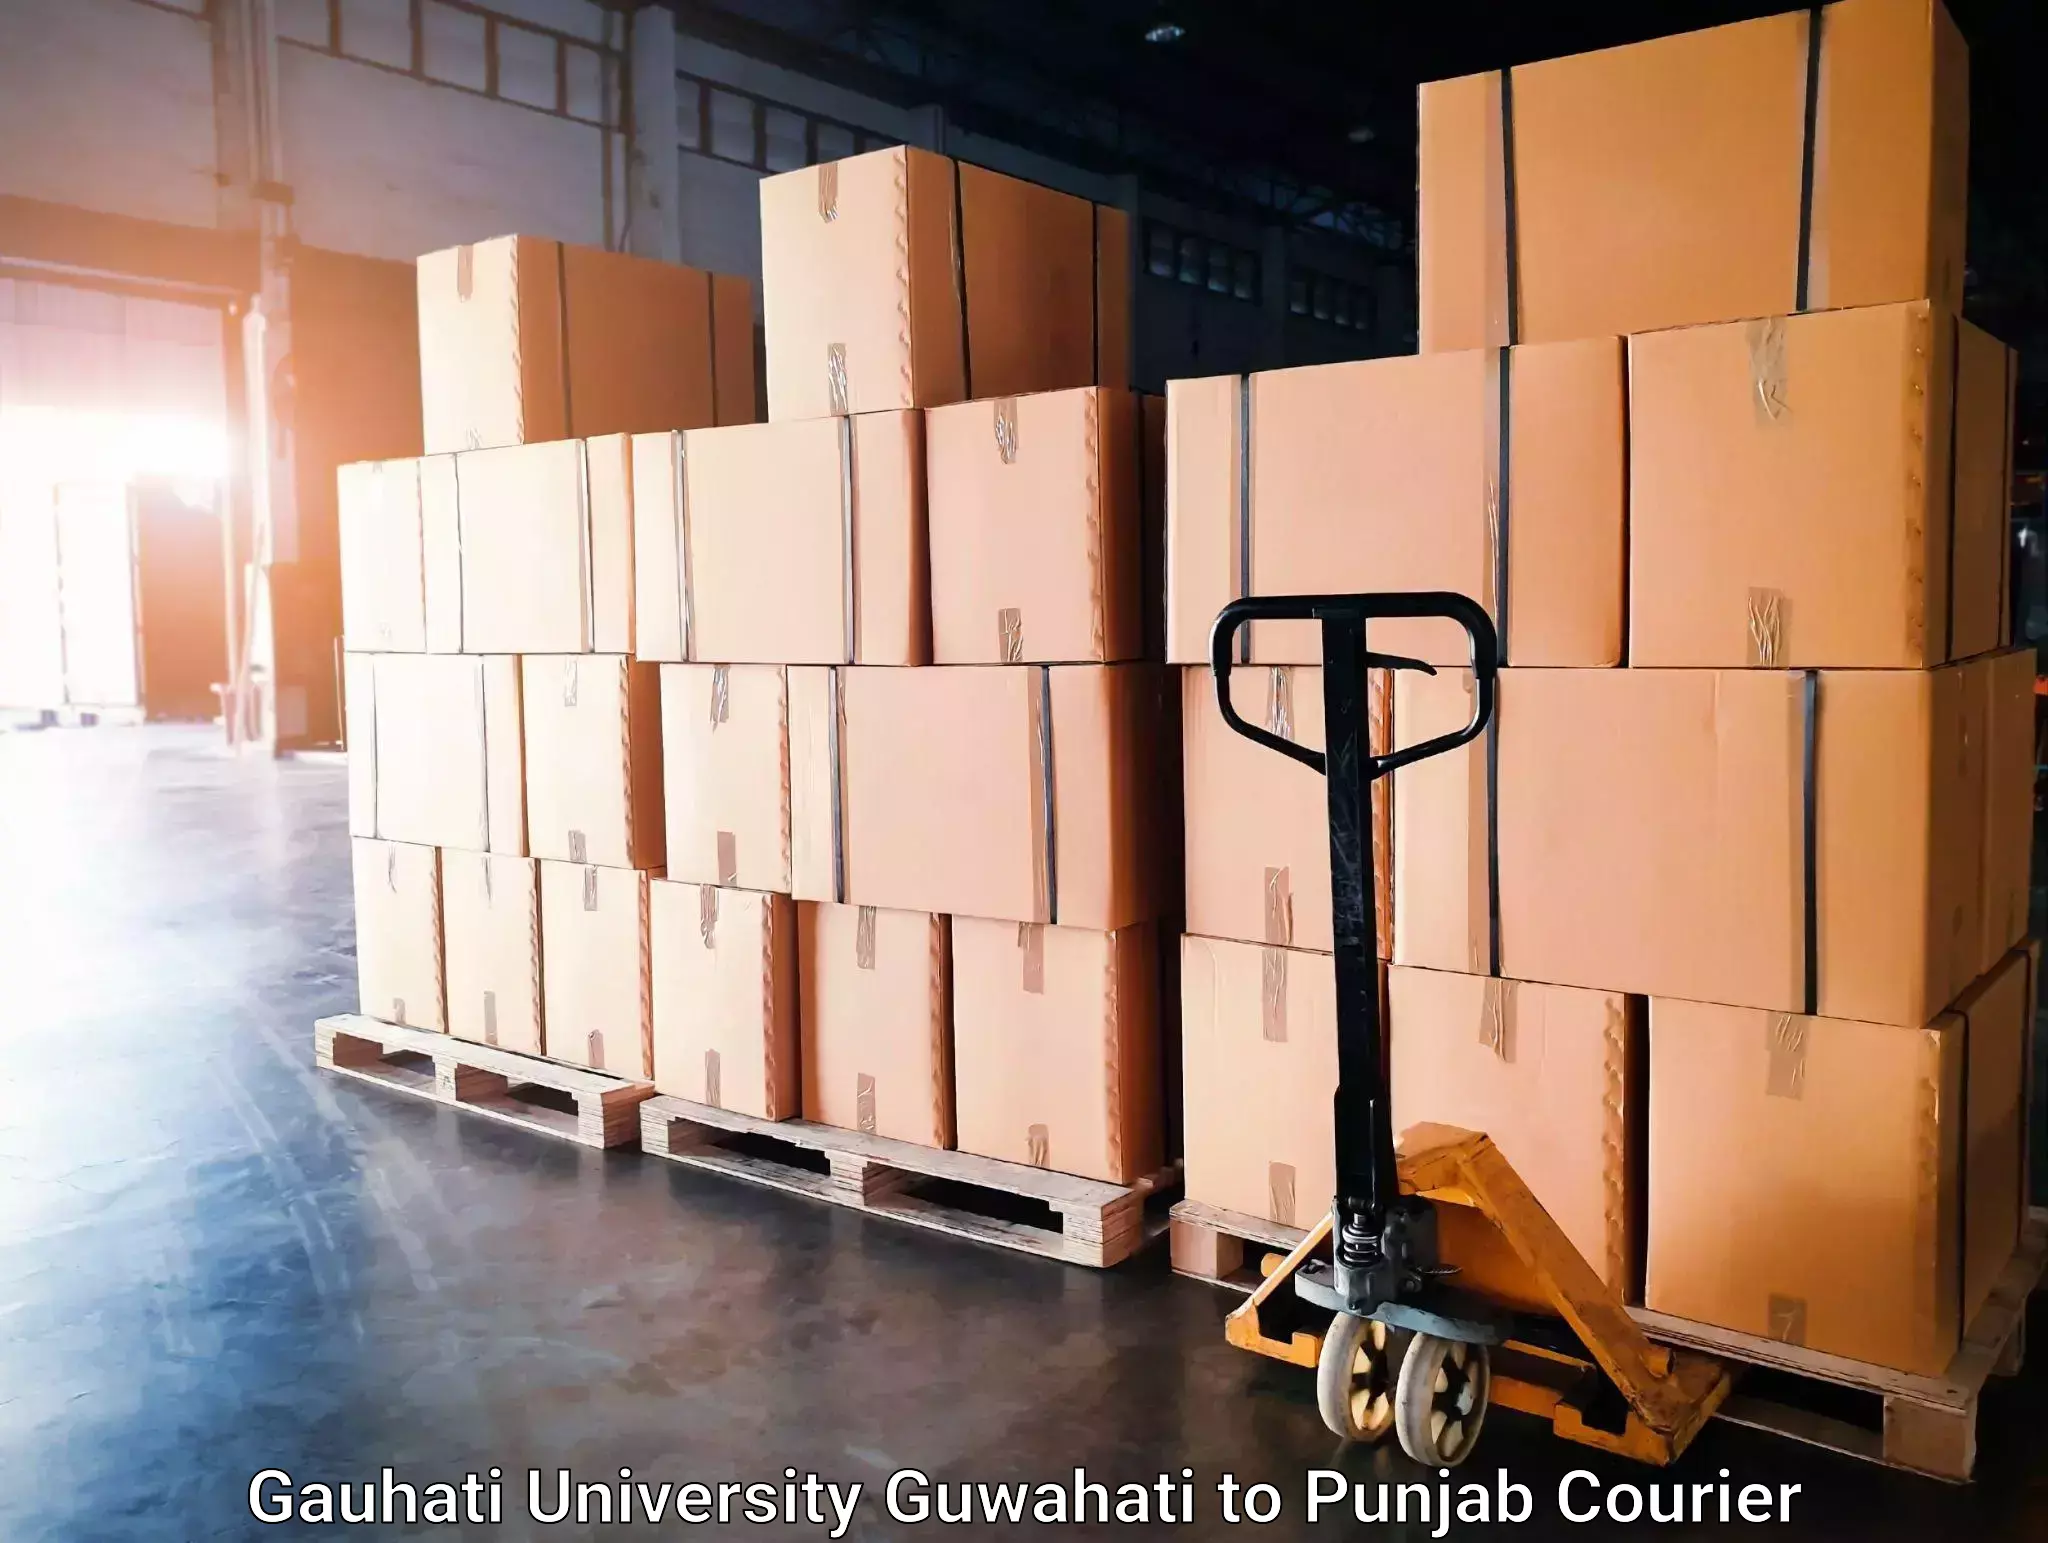 Speedy delivery service Gauhati University Guwahati to Fazilka